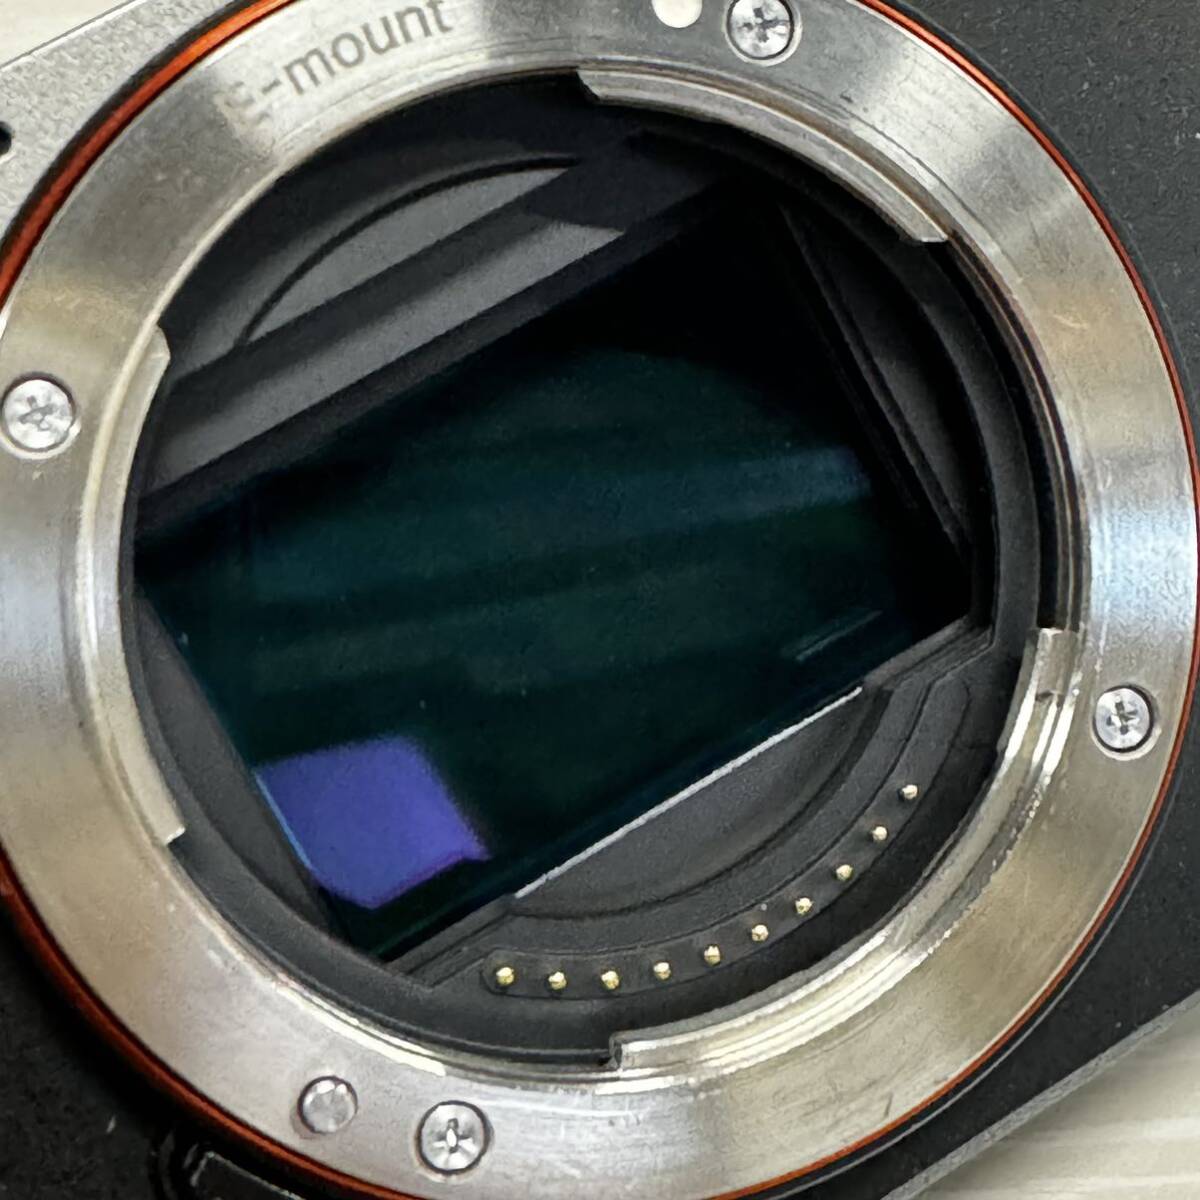  Sony (SONY) полный размер беззеркальный однообъективный камера α7C корпус ( линзы нет ) ILCE-7C черный цифровая камера 